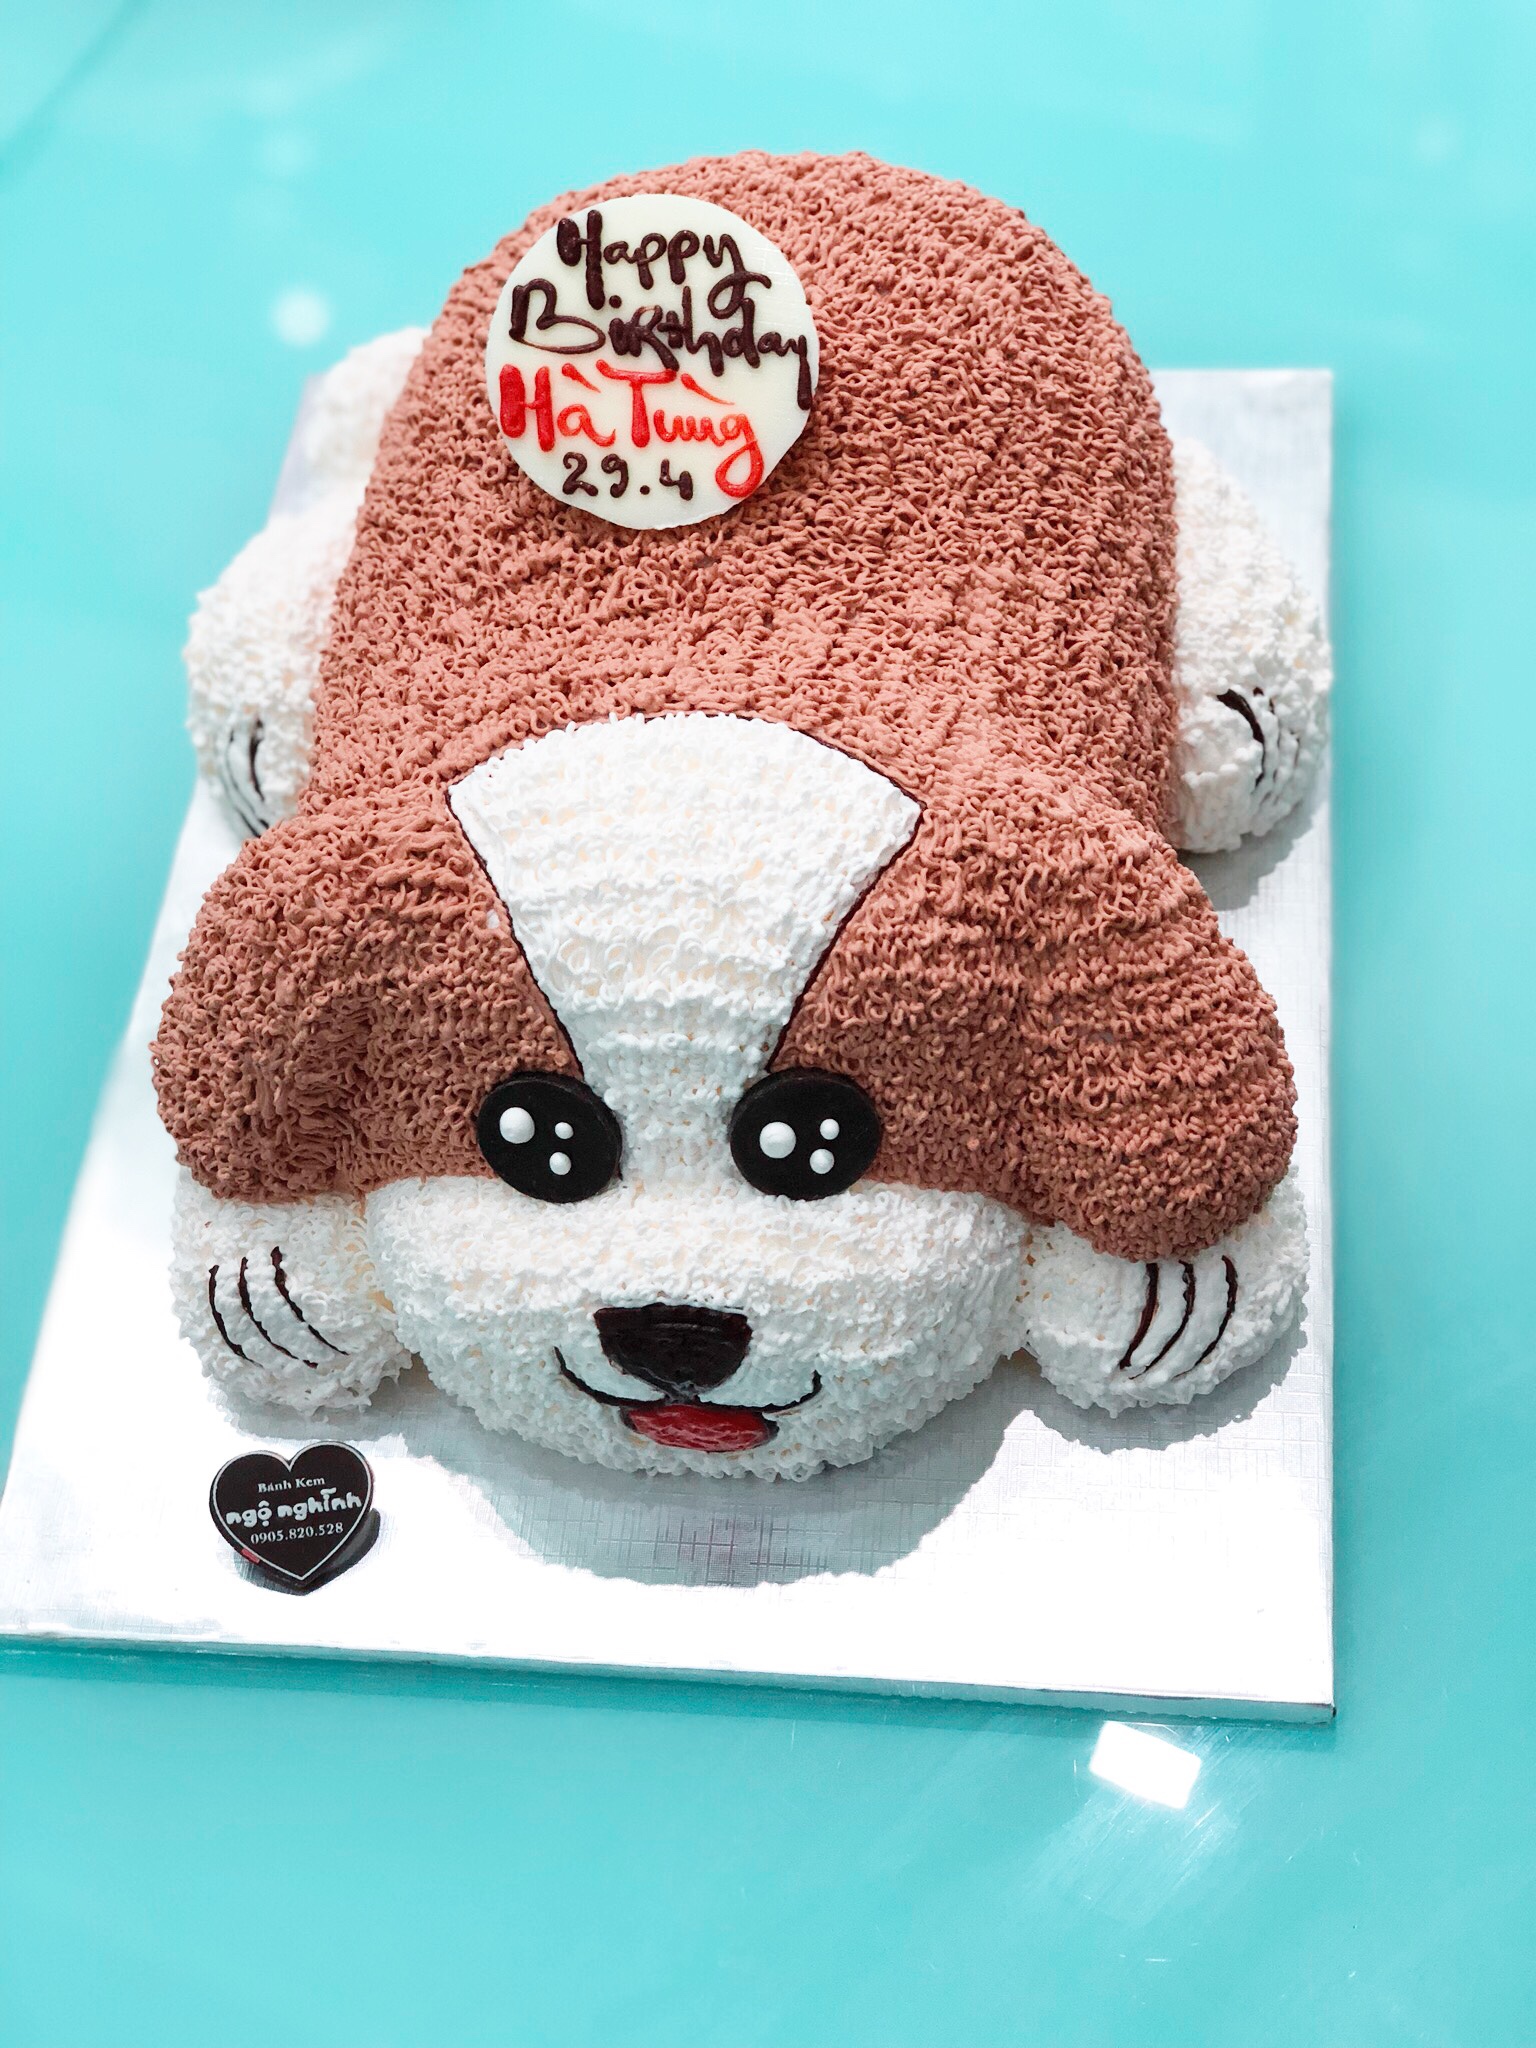 Bánh kem sinh nhật con chó 3D: Giờ đây, bạn có thể chọn một chiếc bánh sinh nhật con chó 3D tuyệt đẹp để thắp sáng lễ kỷ niệm của con bạn. Với các chi tiết vô cùng tinh xảo và quyến rũ, một chiếc bánh kem sinh nhật con chó 3D sẽ mang đến cho bạn một trải nghiệm tuyệt vời.